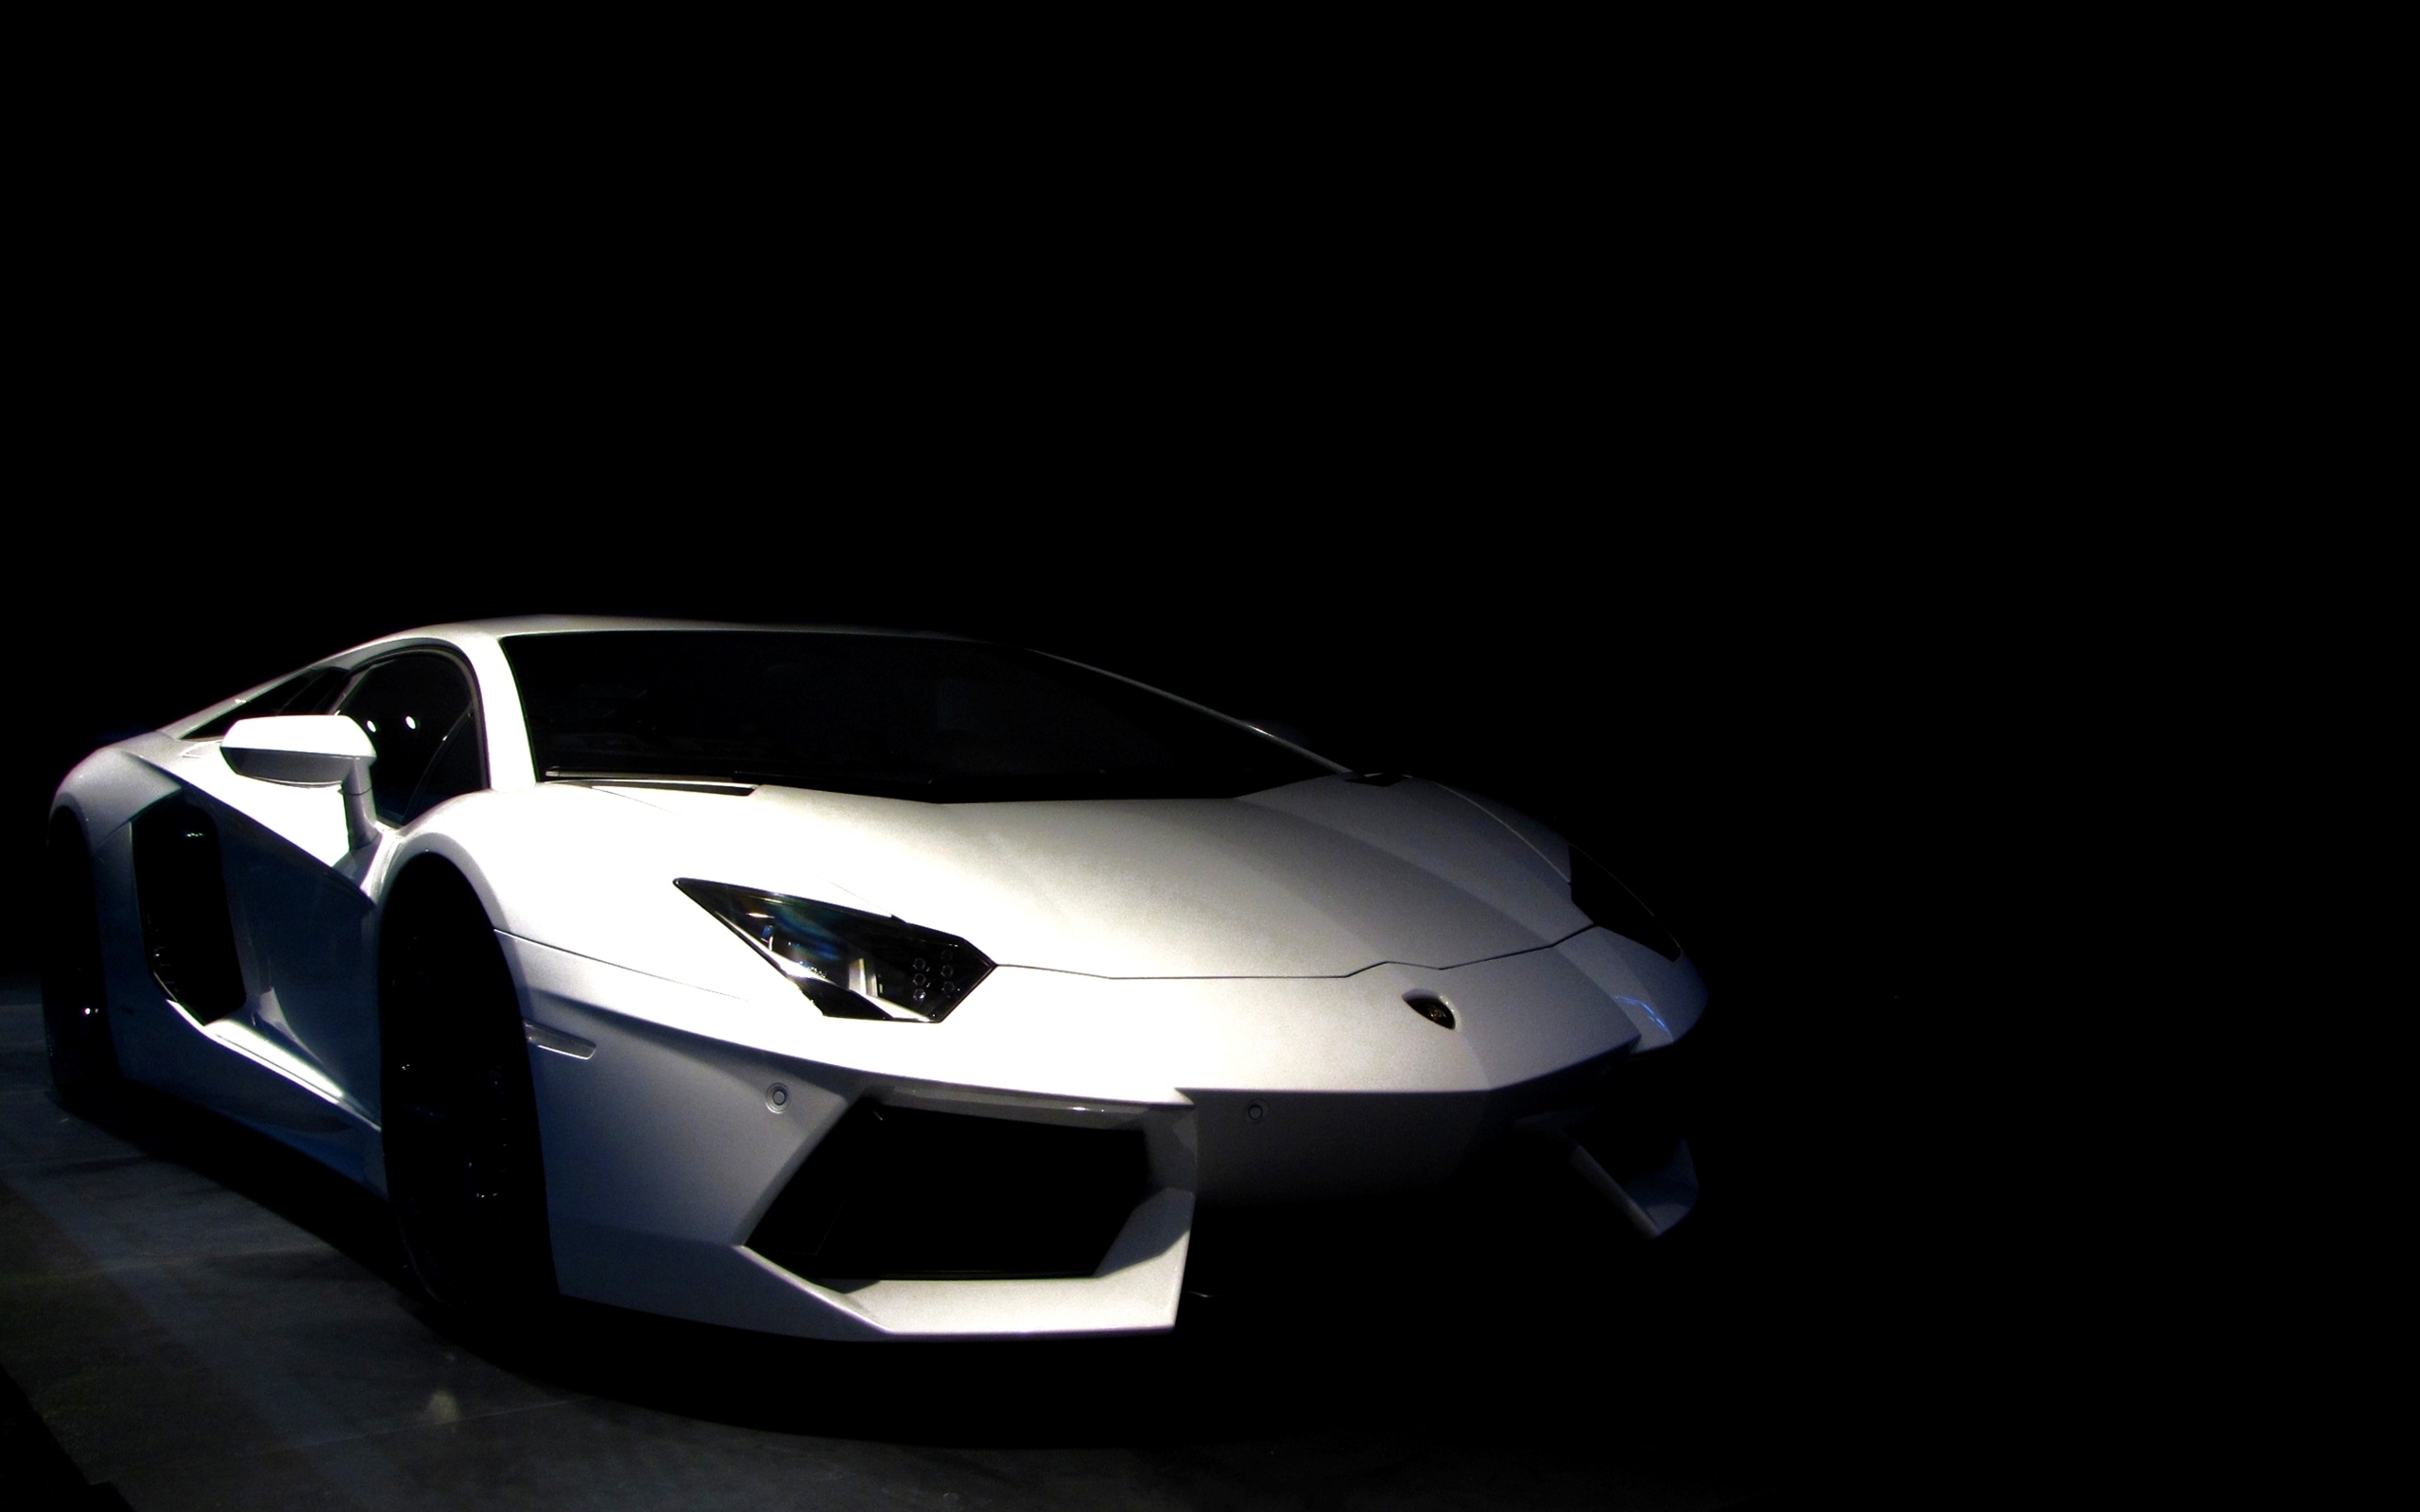 Wallpaper White Lamborghini Aventador in a Dark Room, Background - Download  Free Image